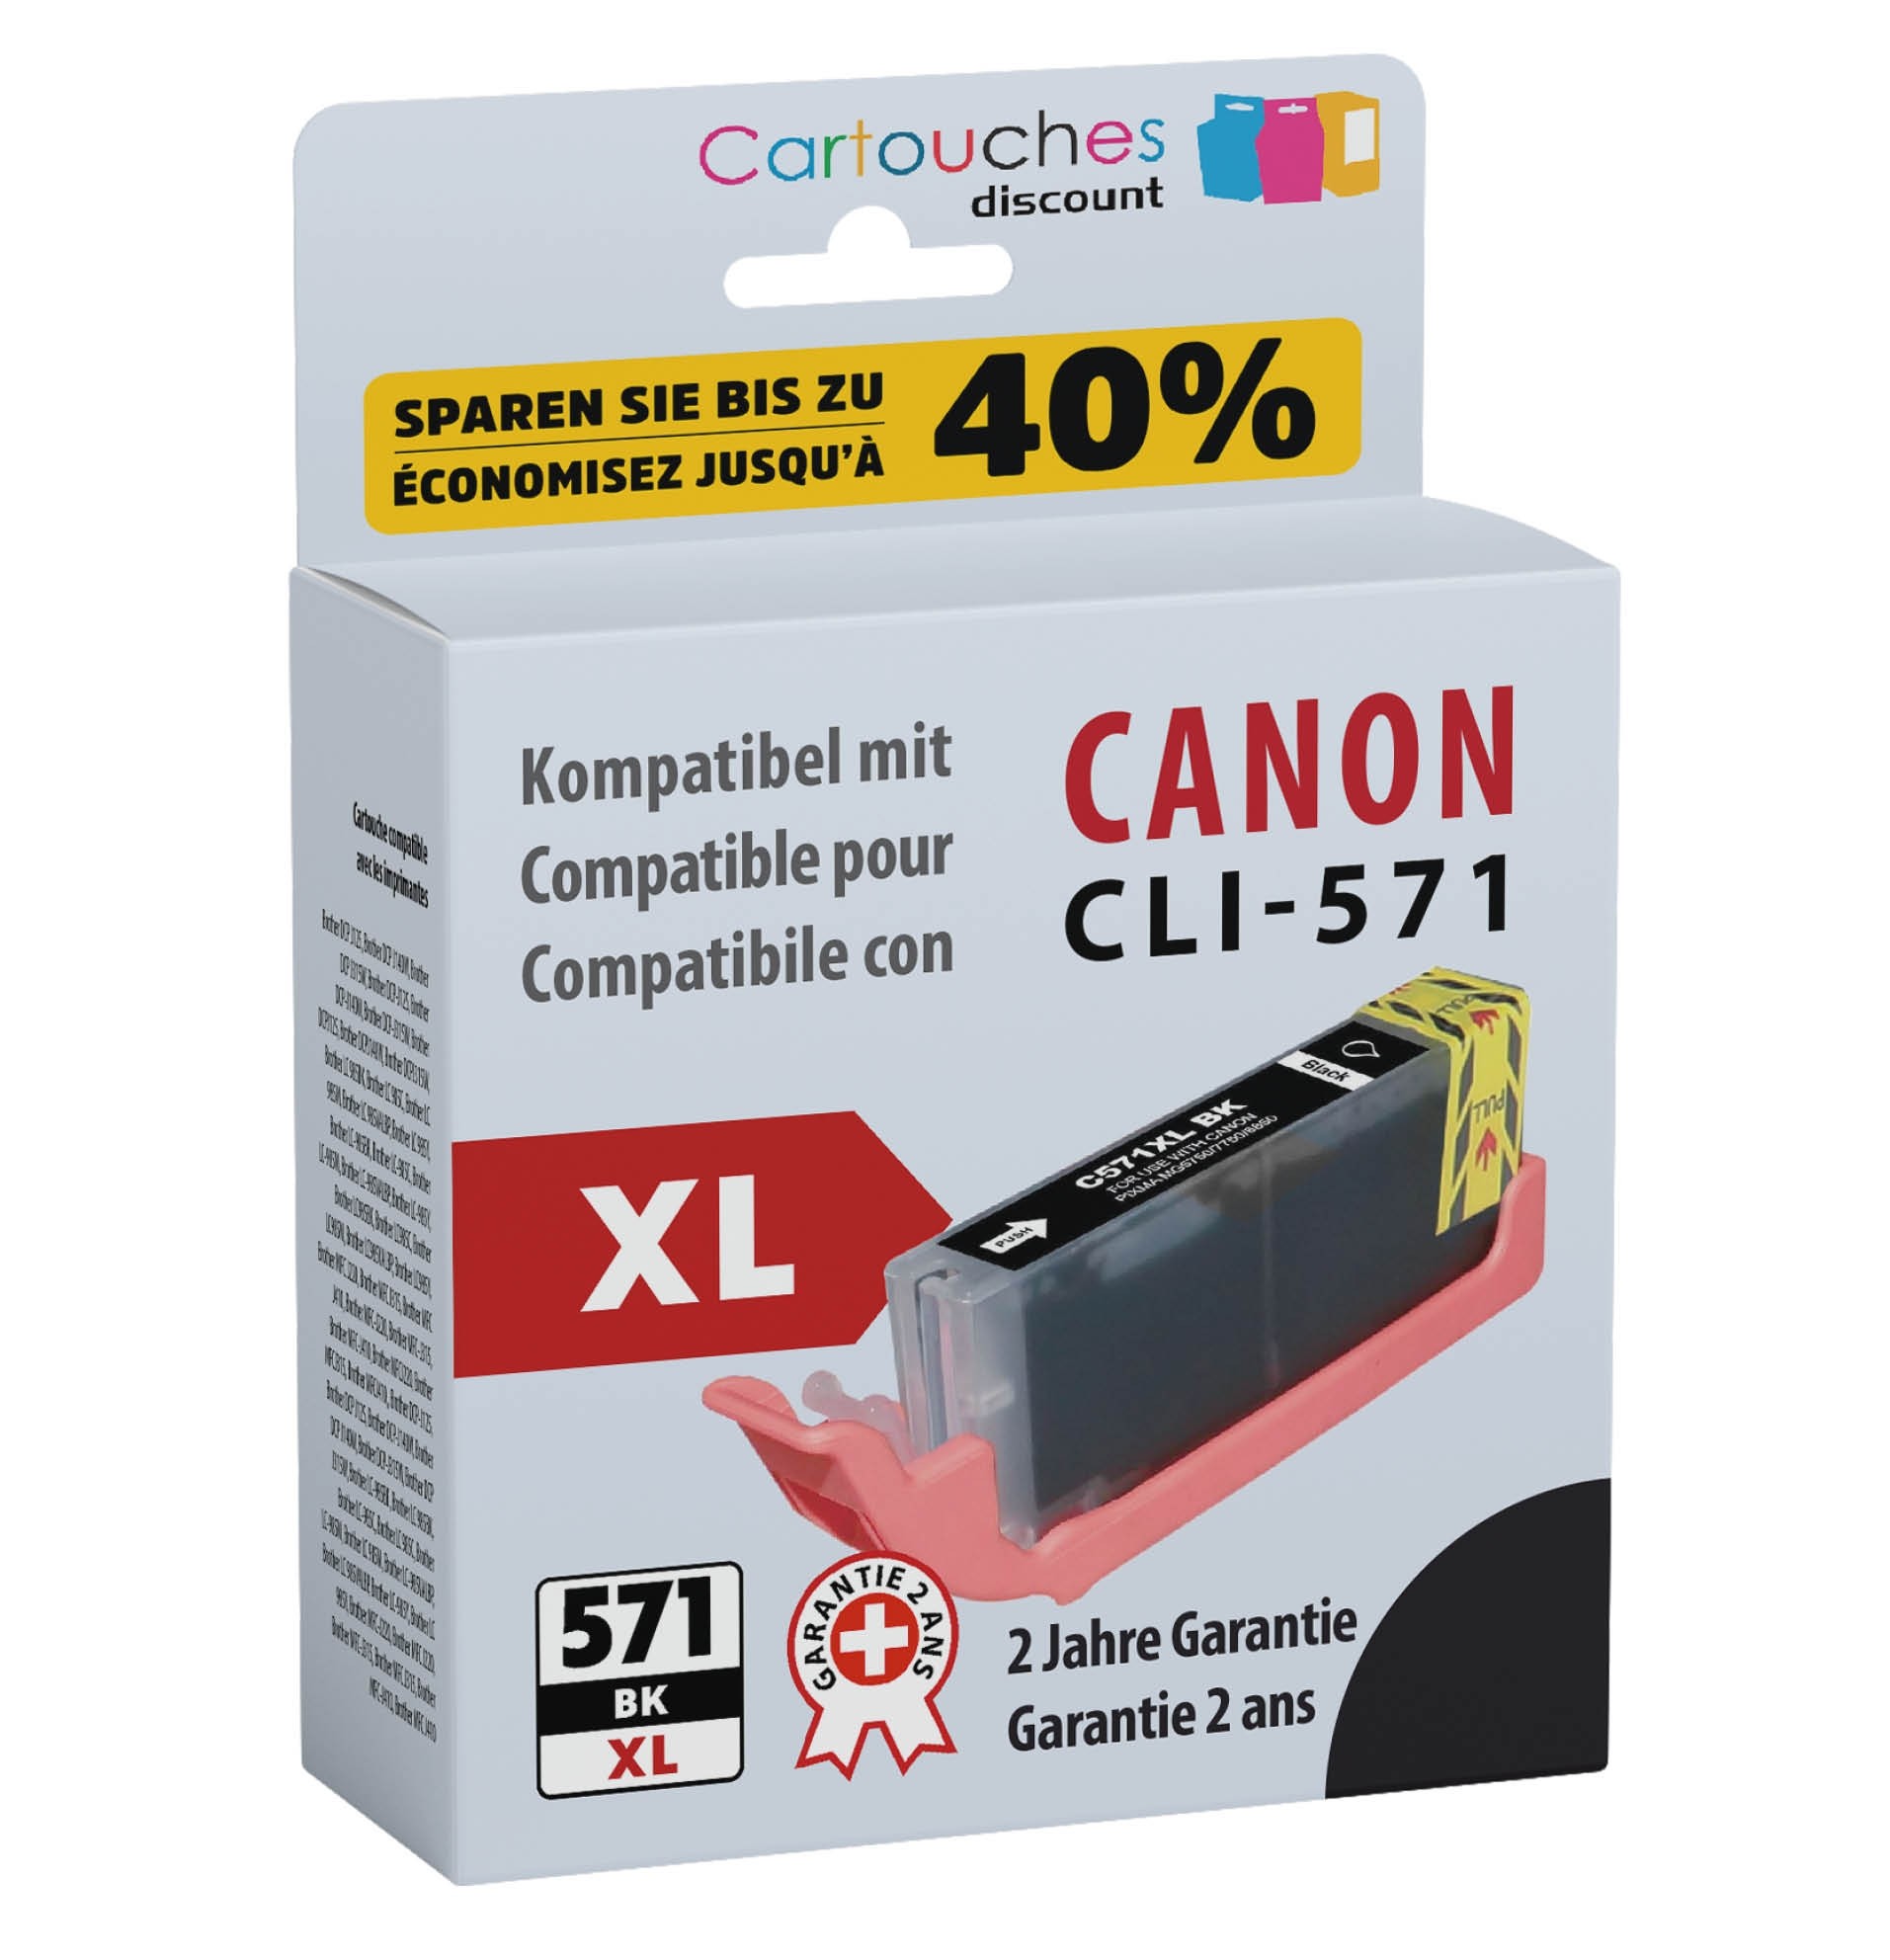 Cartouche compatible Canon CLI-571 XL / Noir